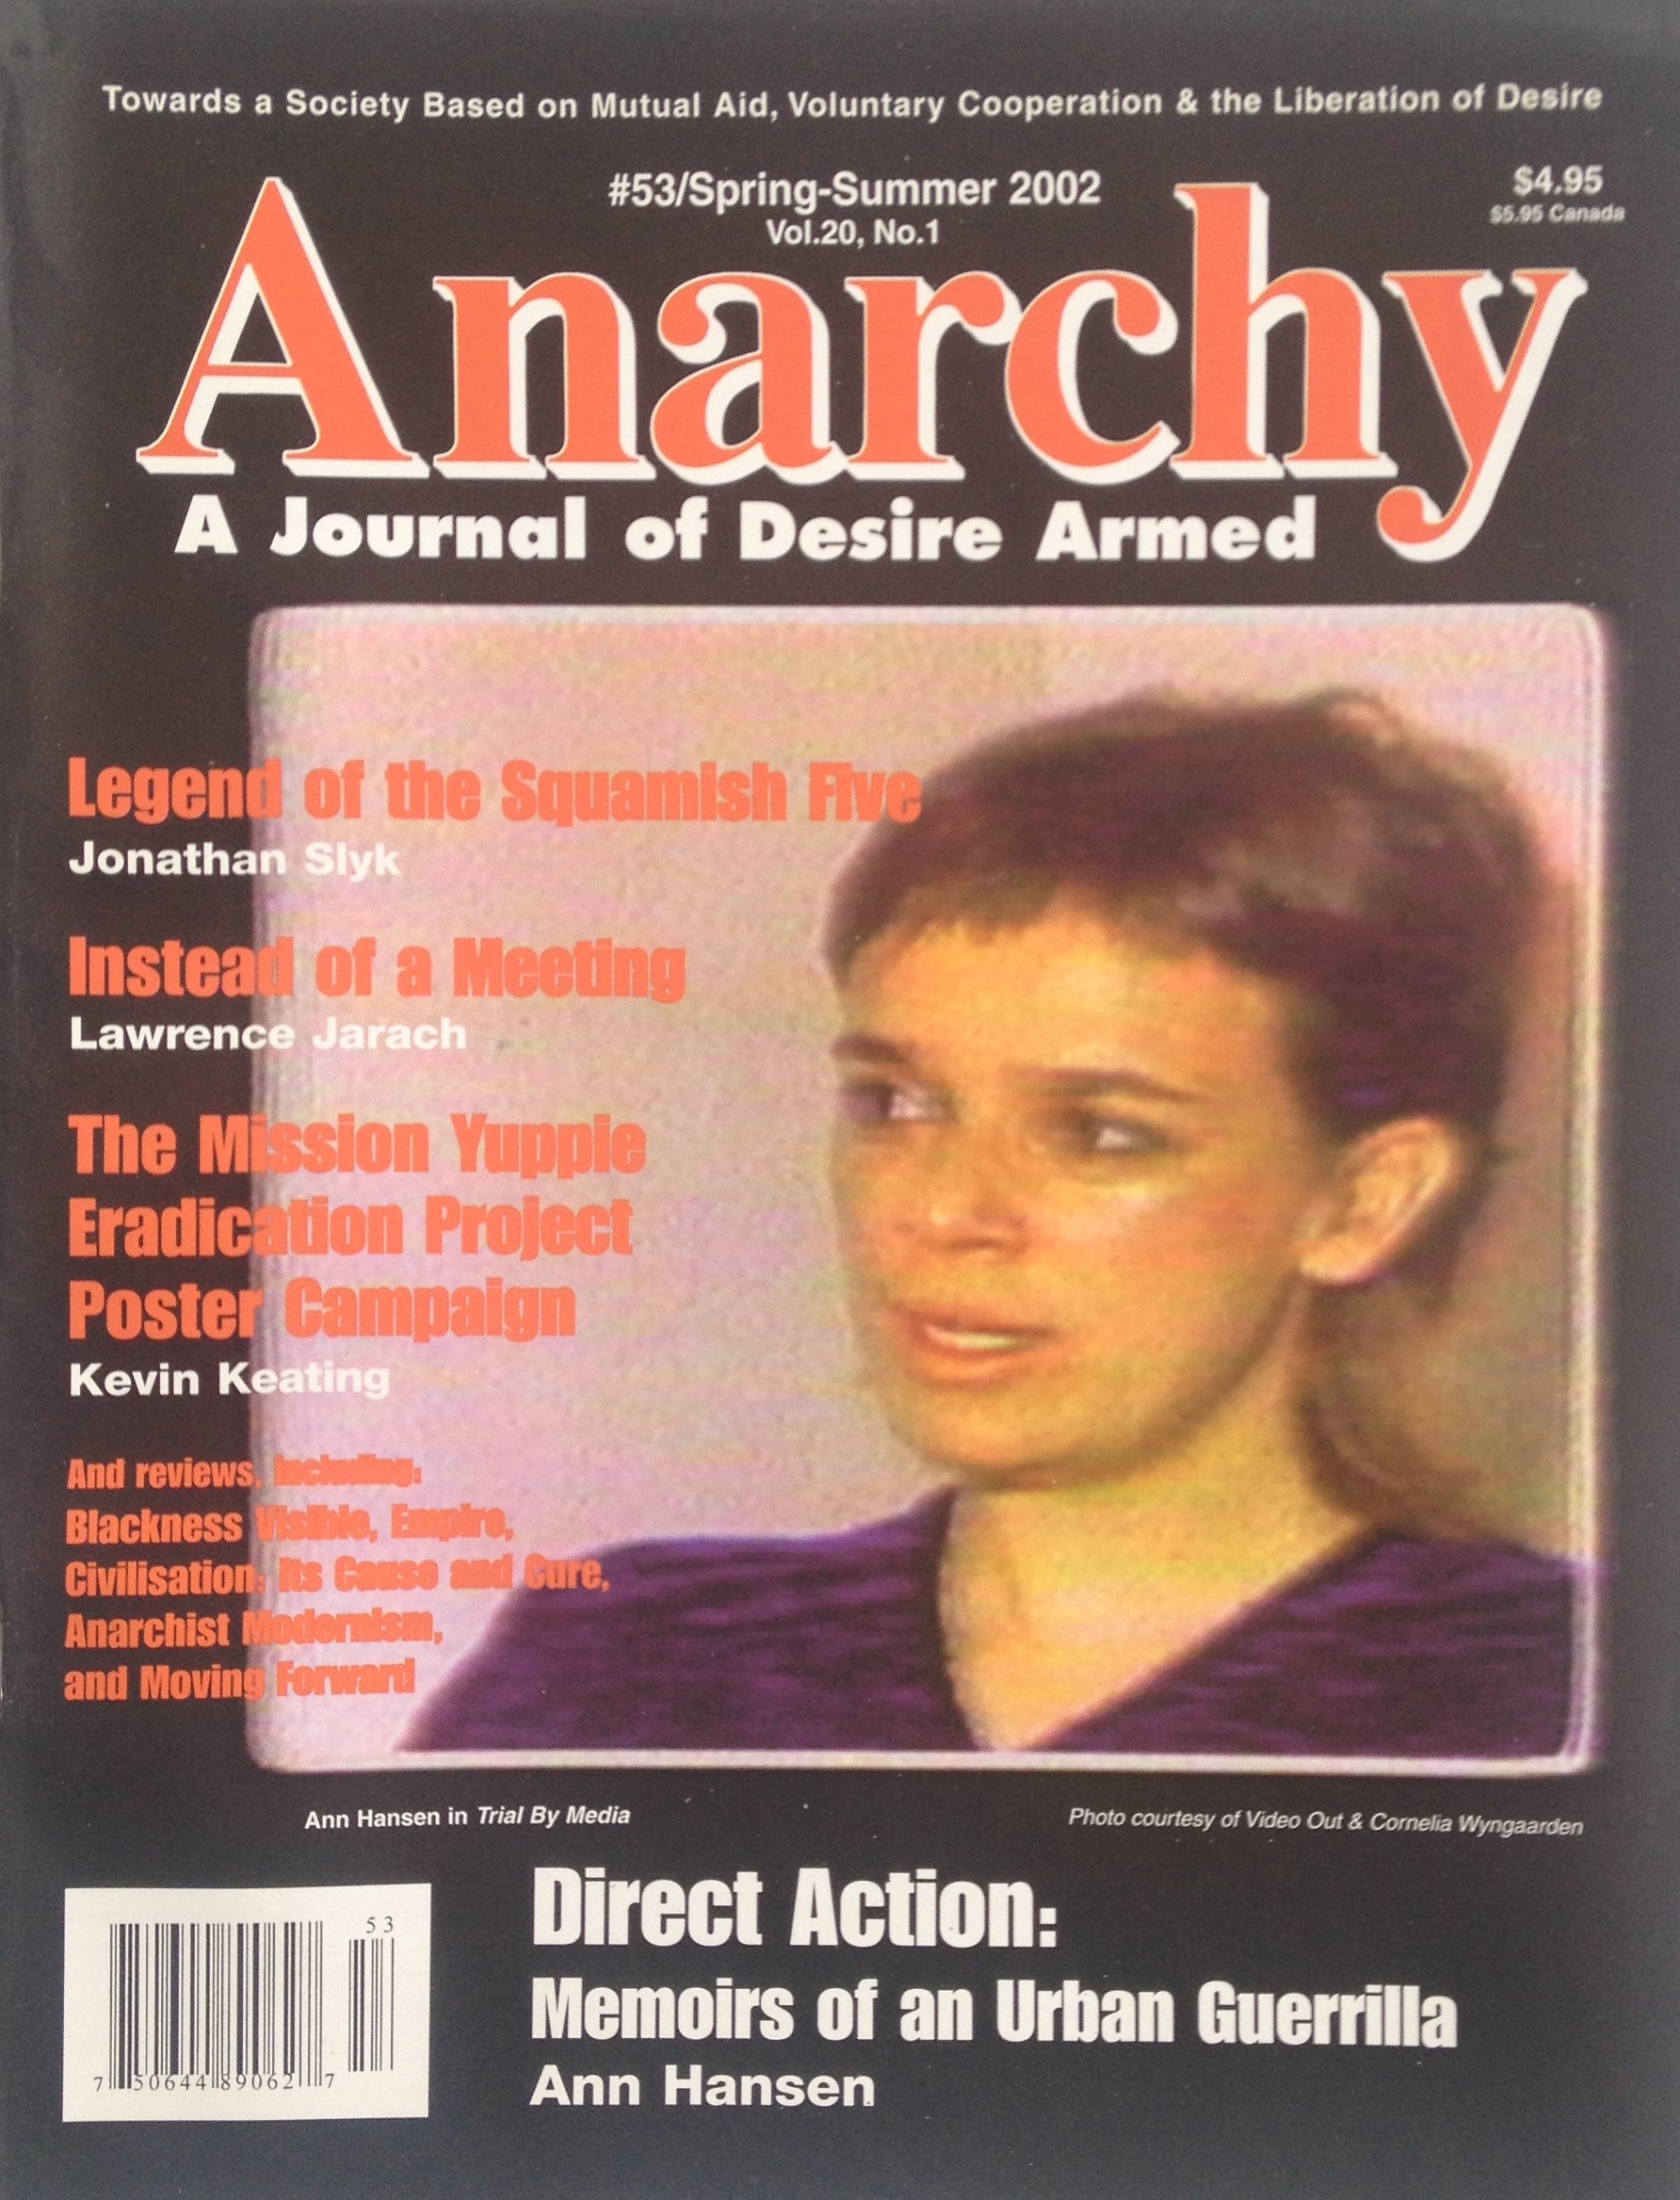 Anarchy #53